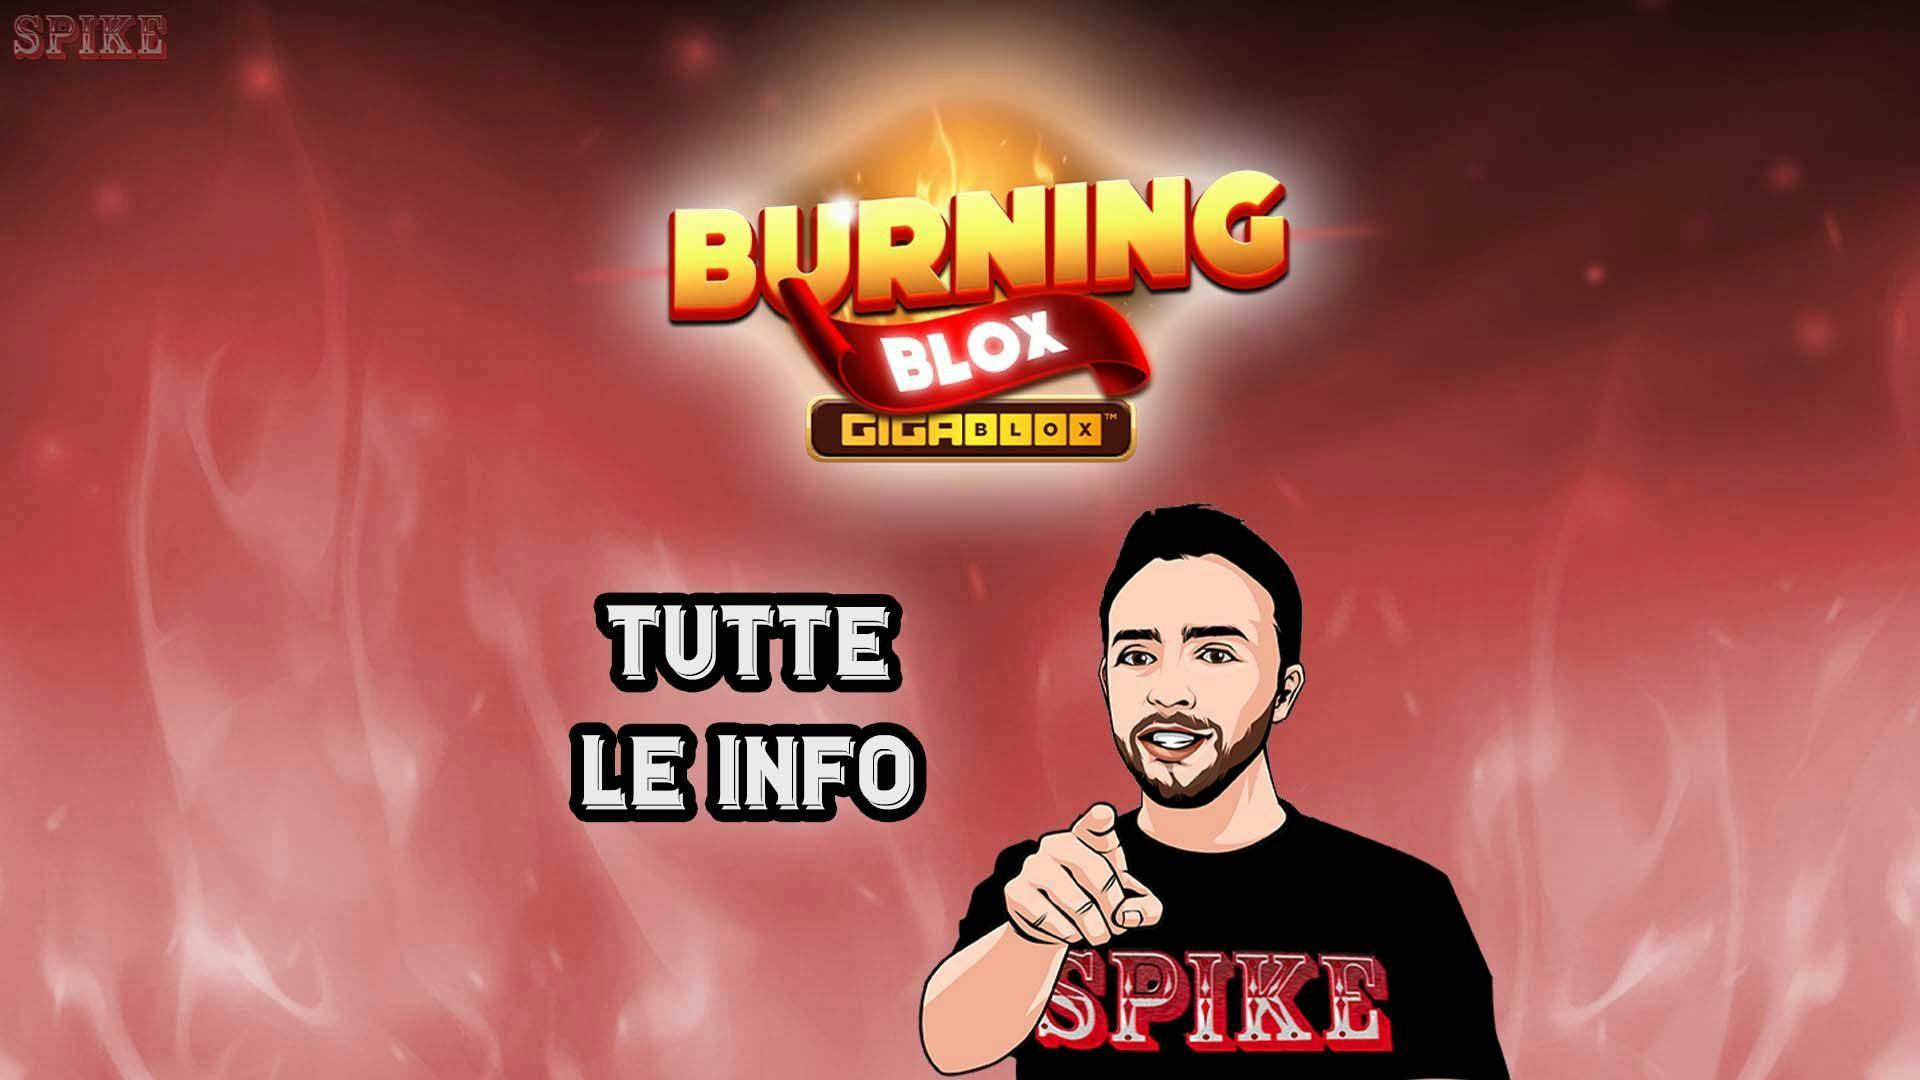 Burning Blox GigaBlox Nuova Slot